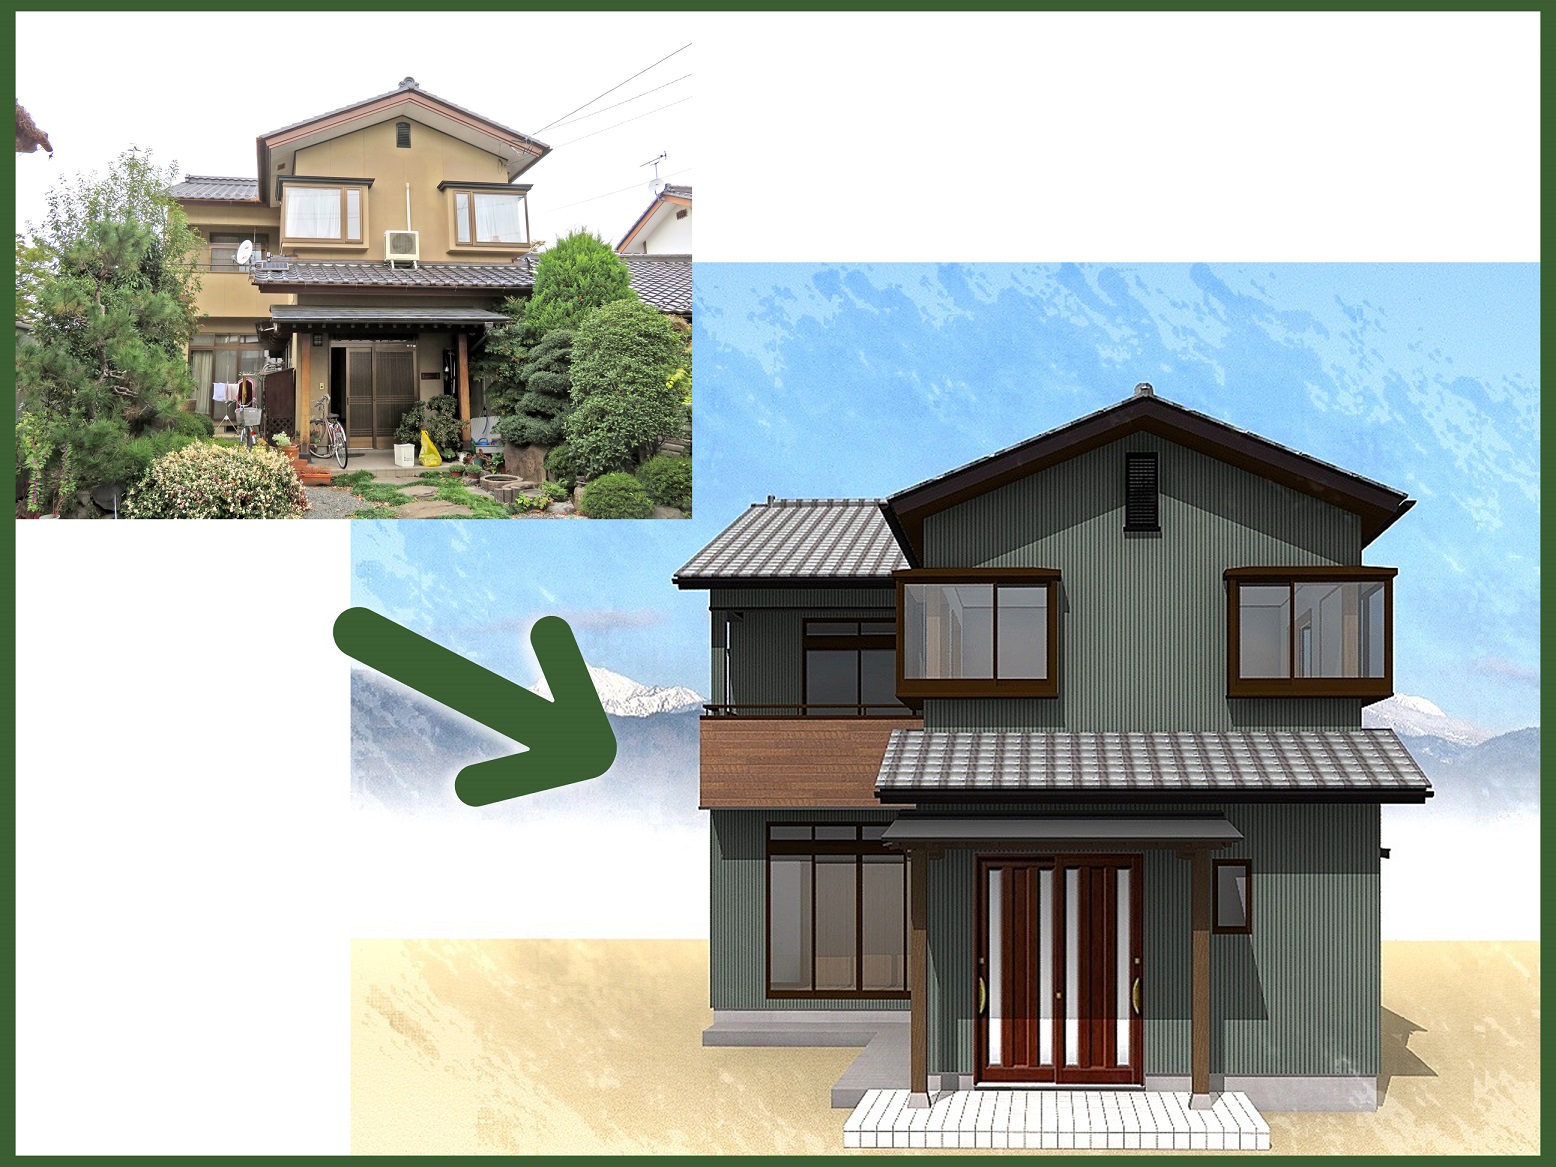 長野市松代の家<br />
外壁をサイディングにより<br />
現代風にイメージチェンジ